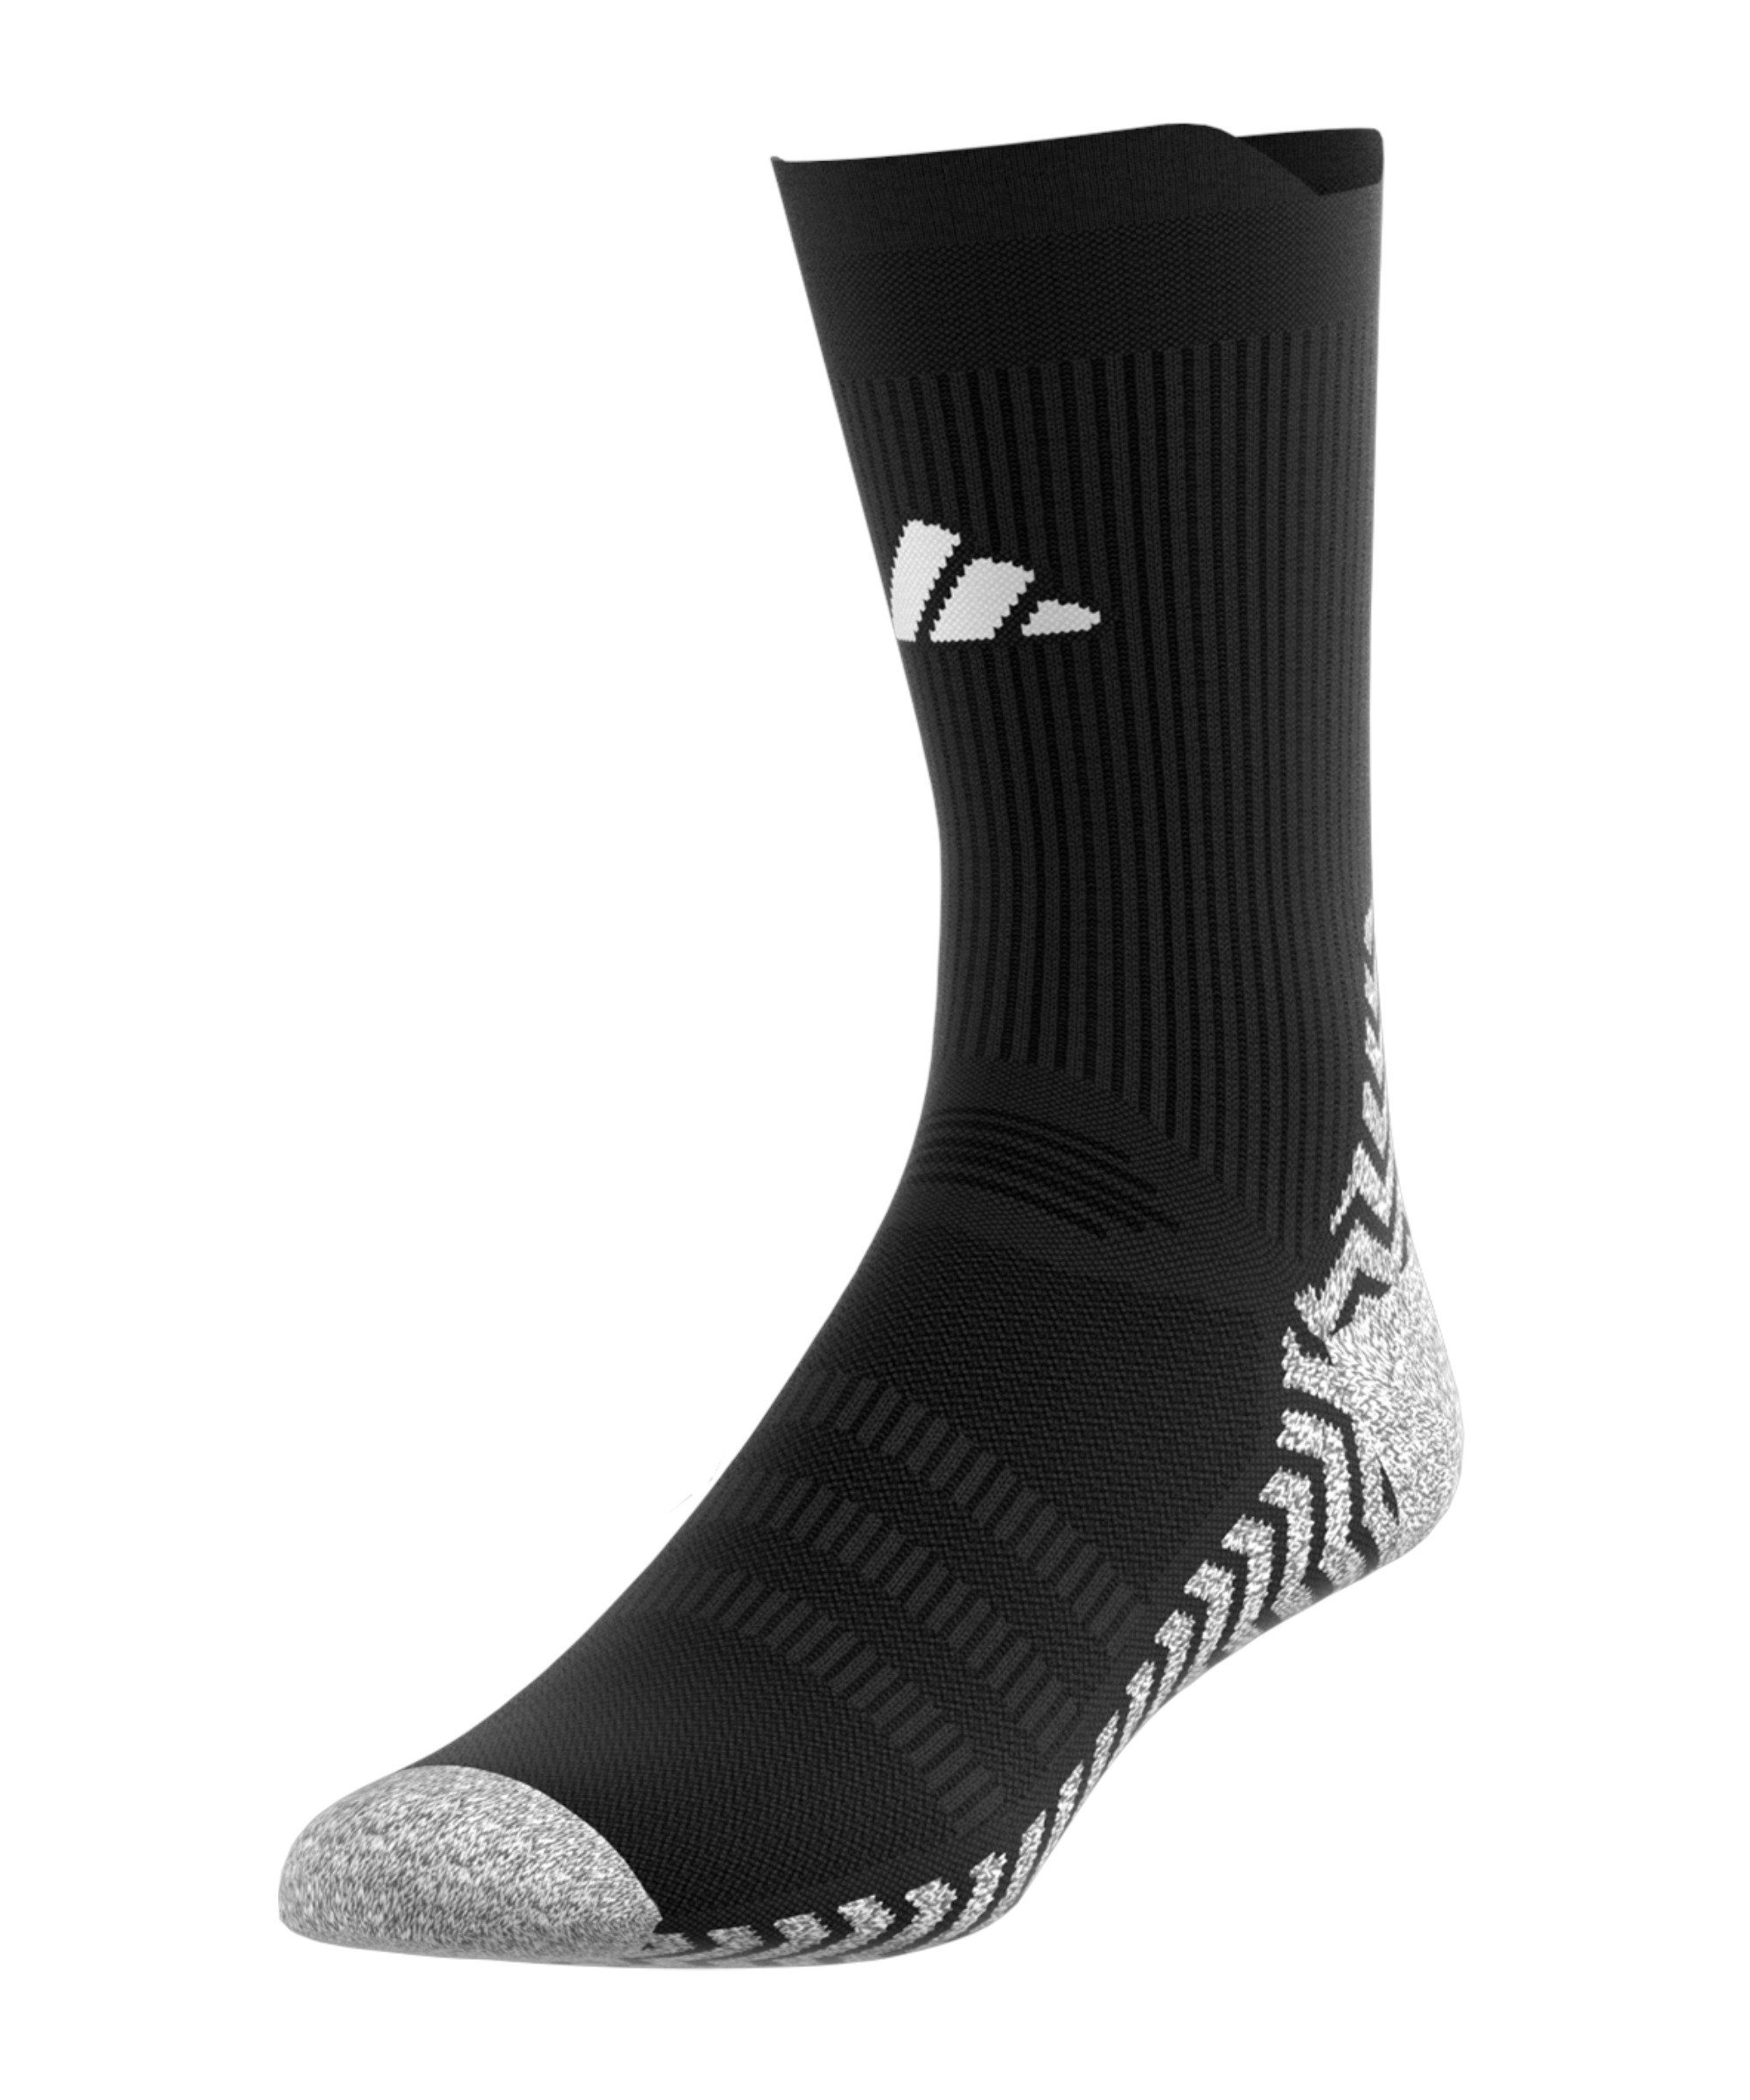 adidas Performance Sportsocken Grip Light Socken default schwarzweiss